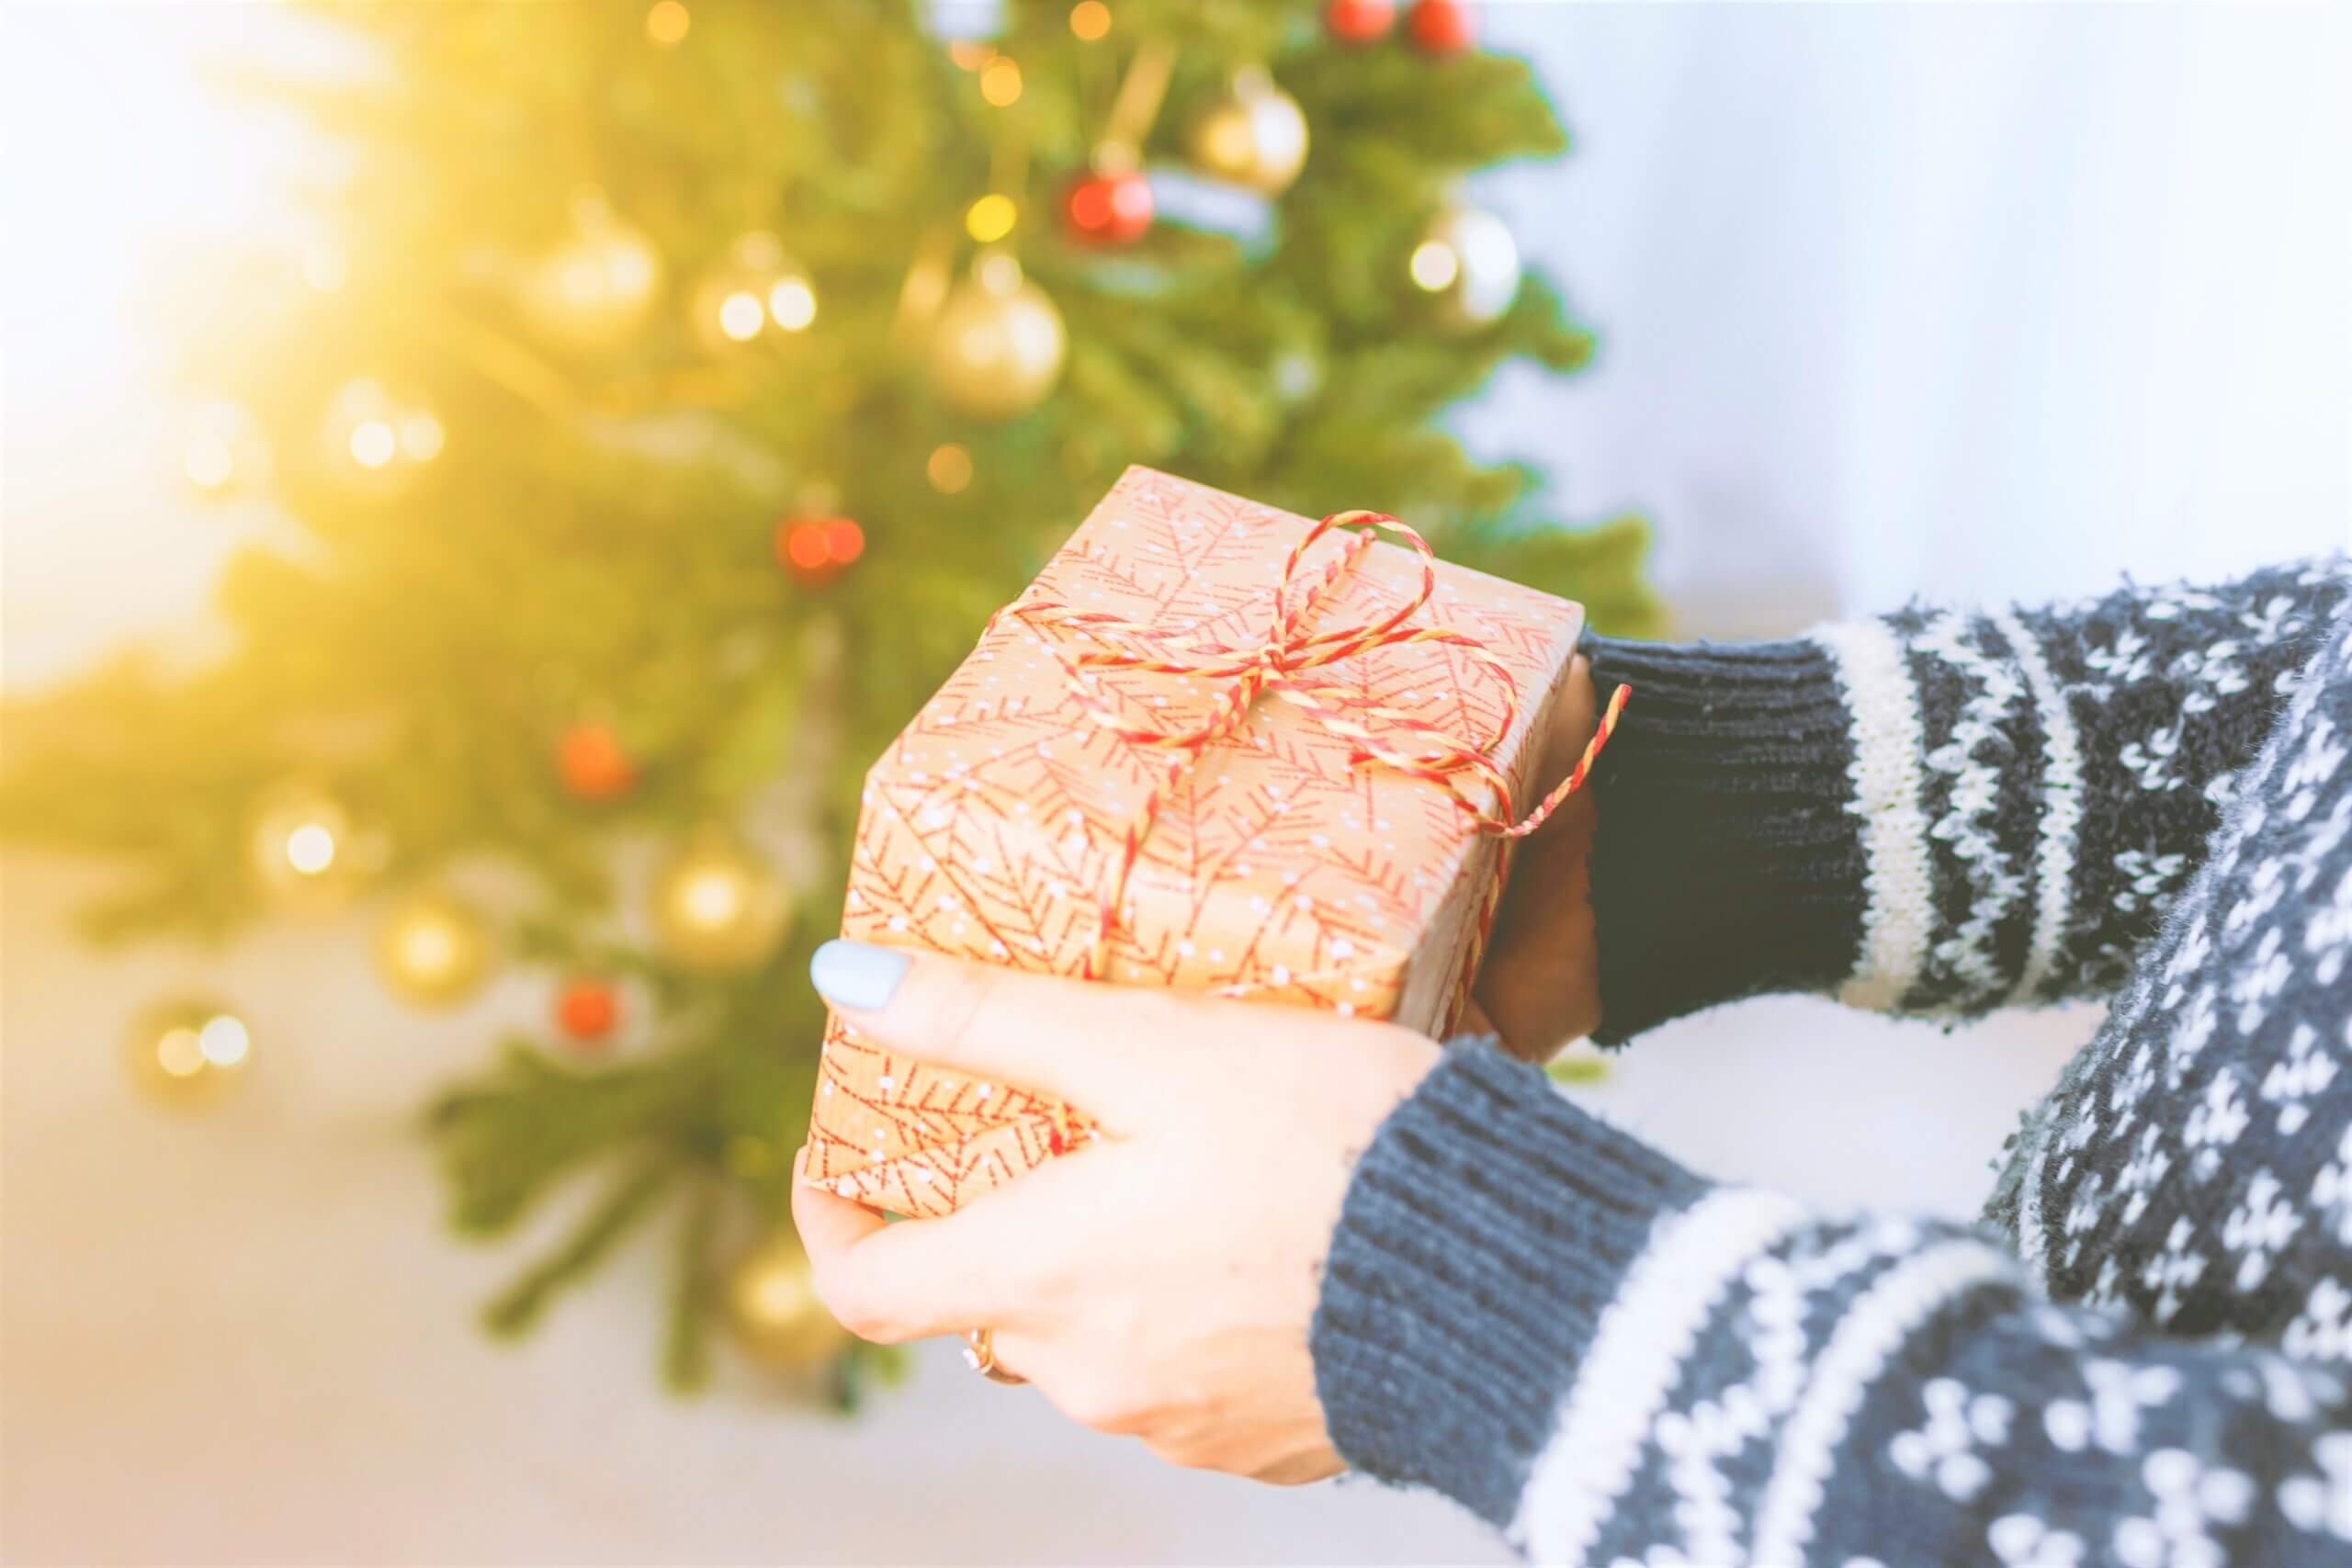 クリスマスプレゼントにおすすめのAmazonギフト券6種類と購入方法